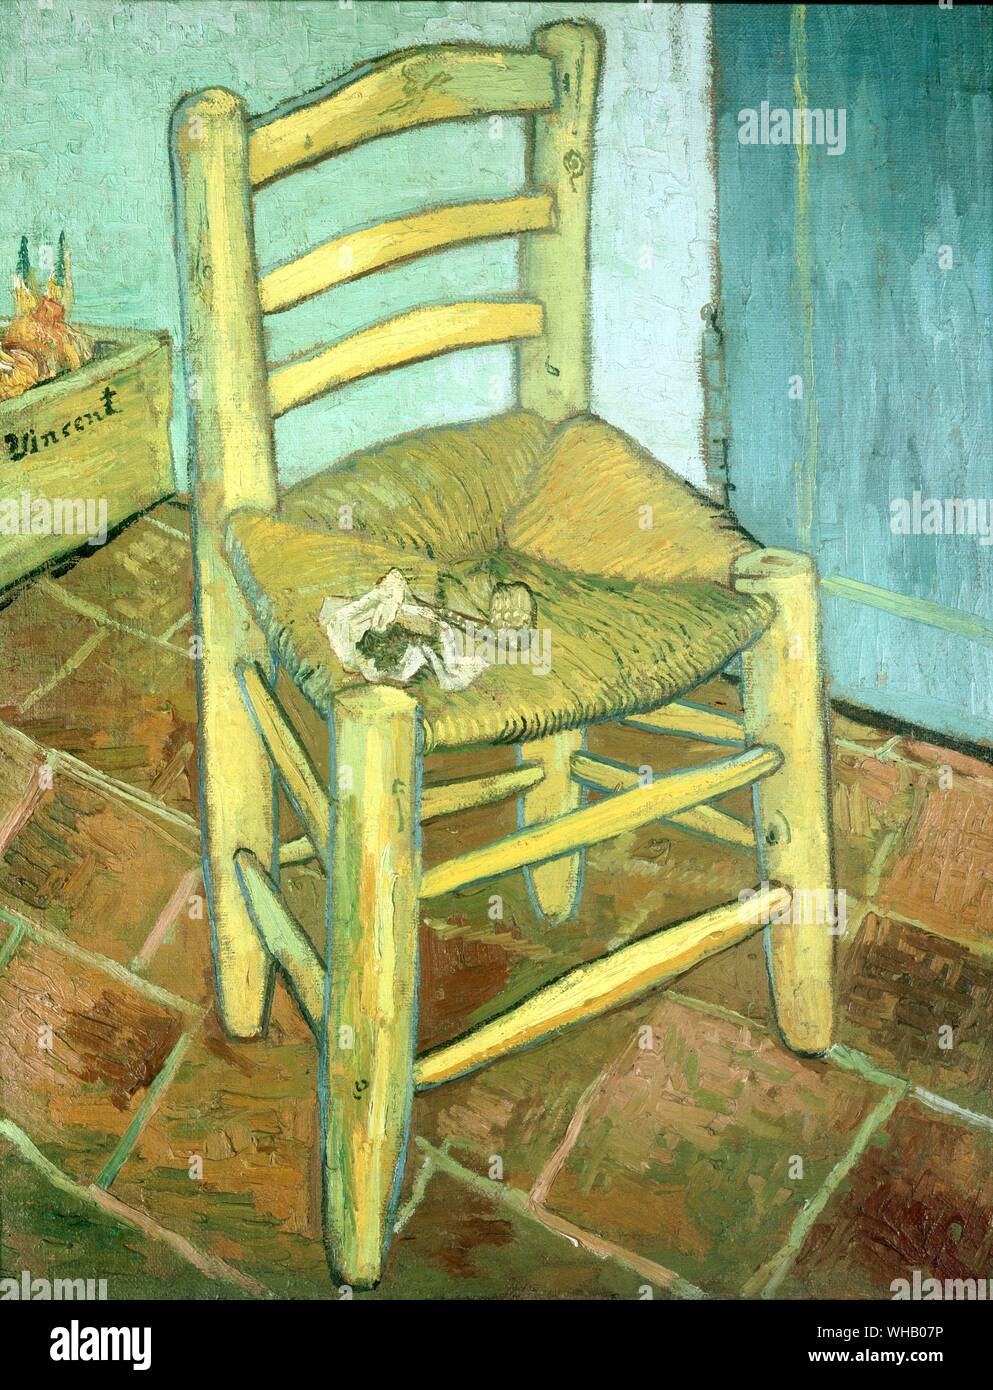 Vincent's Stuhl und seine Pfeife - Arles, Dezember 1888. von Van Gogh. Tate Gallery. Die beiden Gemälde von Vincent und Paul Gauguin Stühle sind unter den am häufigsten analysierten von Van Gogh's Arbeiten. Neben der symbolischen Unterströmungen der Arbeit, diese beiden Bilder sind auch einzigartig in Bezug auf die Art und Weise, in der sie zusammen angezeigt sind - ob an der seltene Exponate, in denen Sie gemeinsam gezeigt wurden (London, 1968, z.b.) oder einfach die Seite an Seite in einem Buch. Im Allgemeinen, wenn gauguins Stuhl ist auf der linken Seite angezeigt wird, dann die Stühle scheinen von einander entfernt zu sein - klar Stockfoto